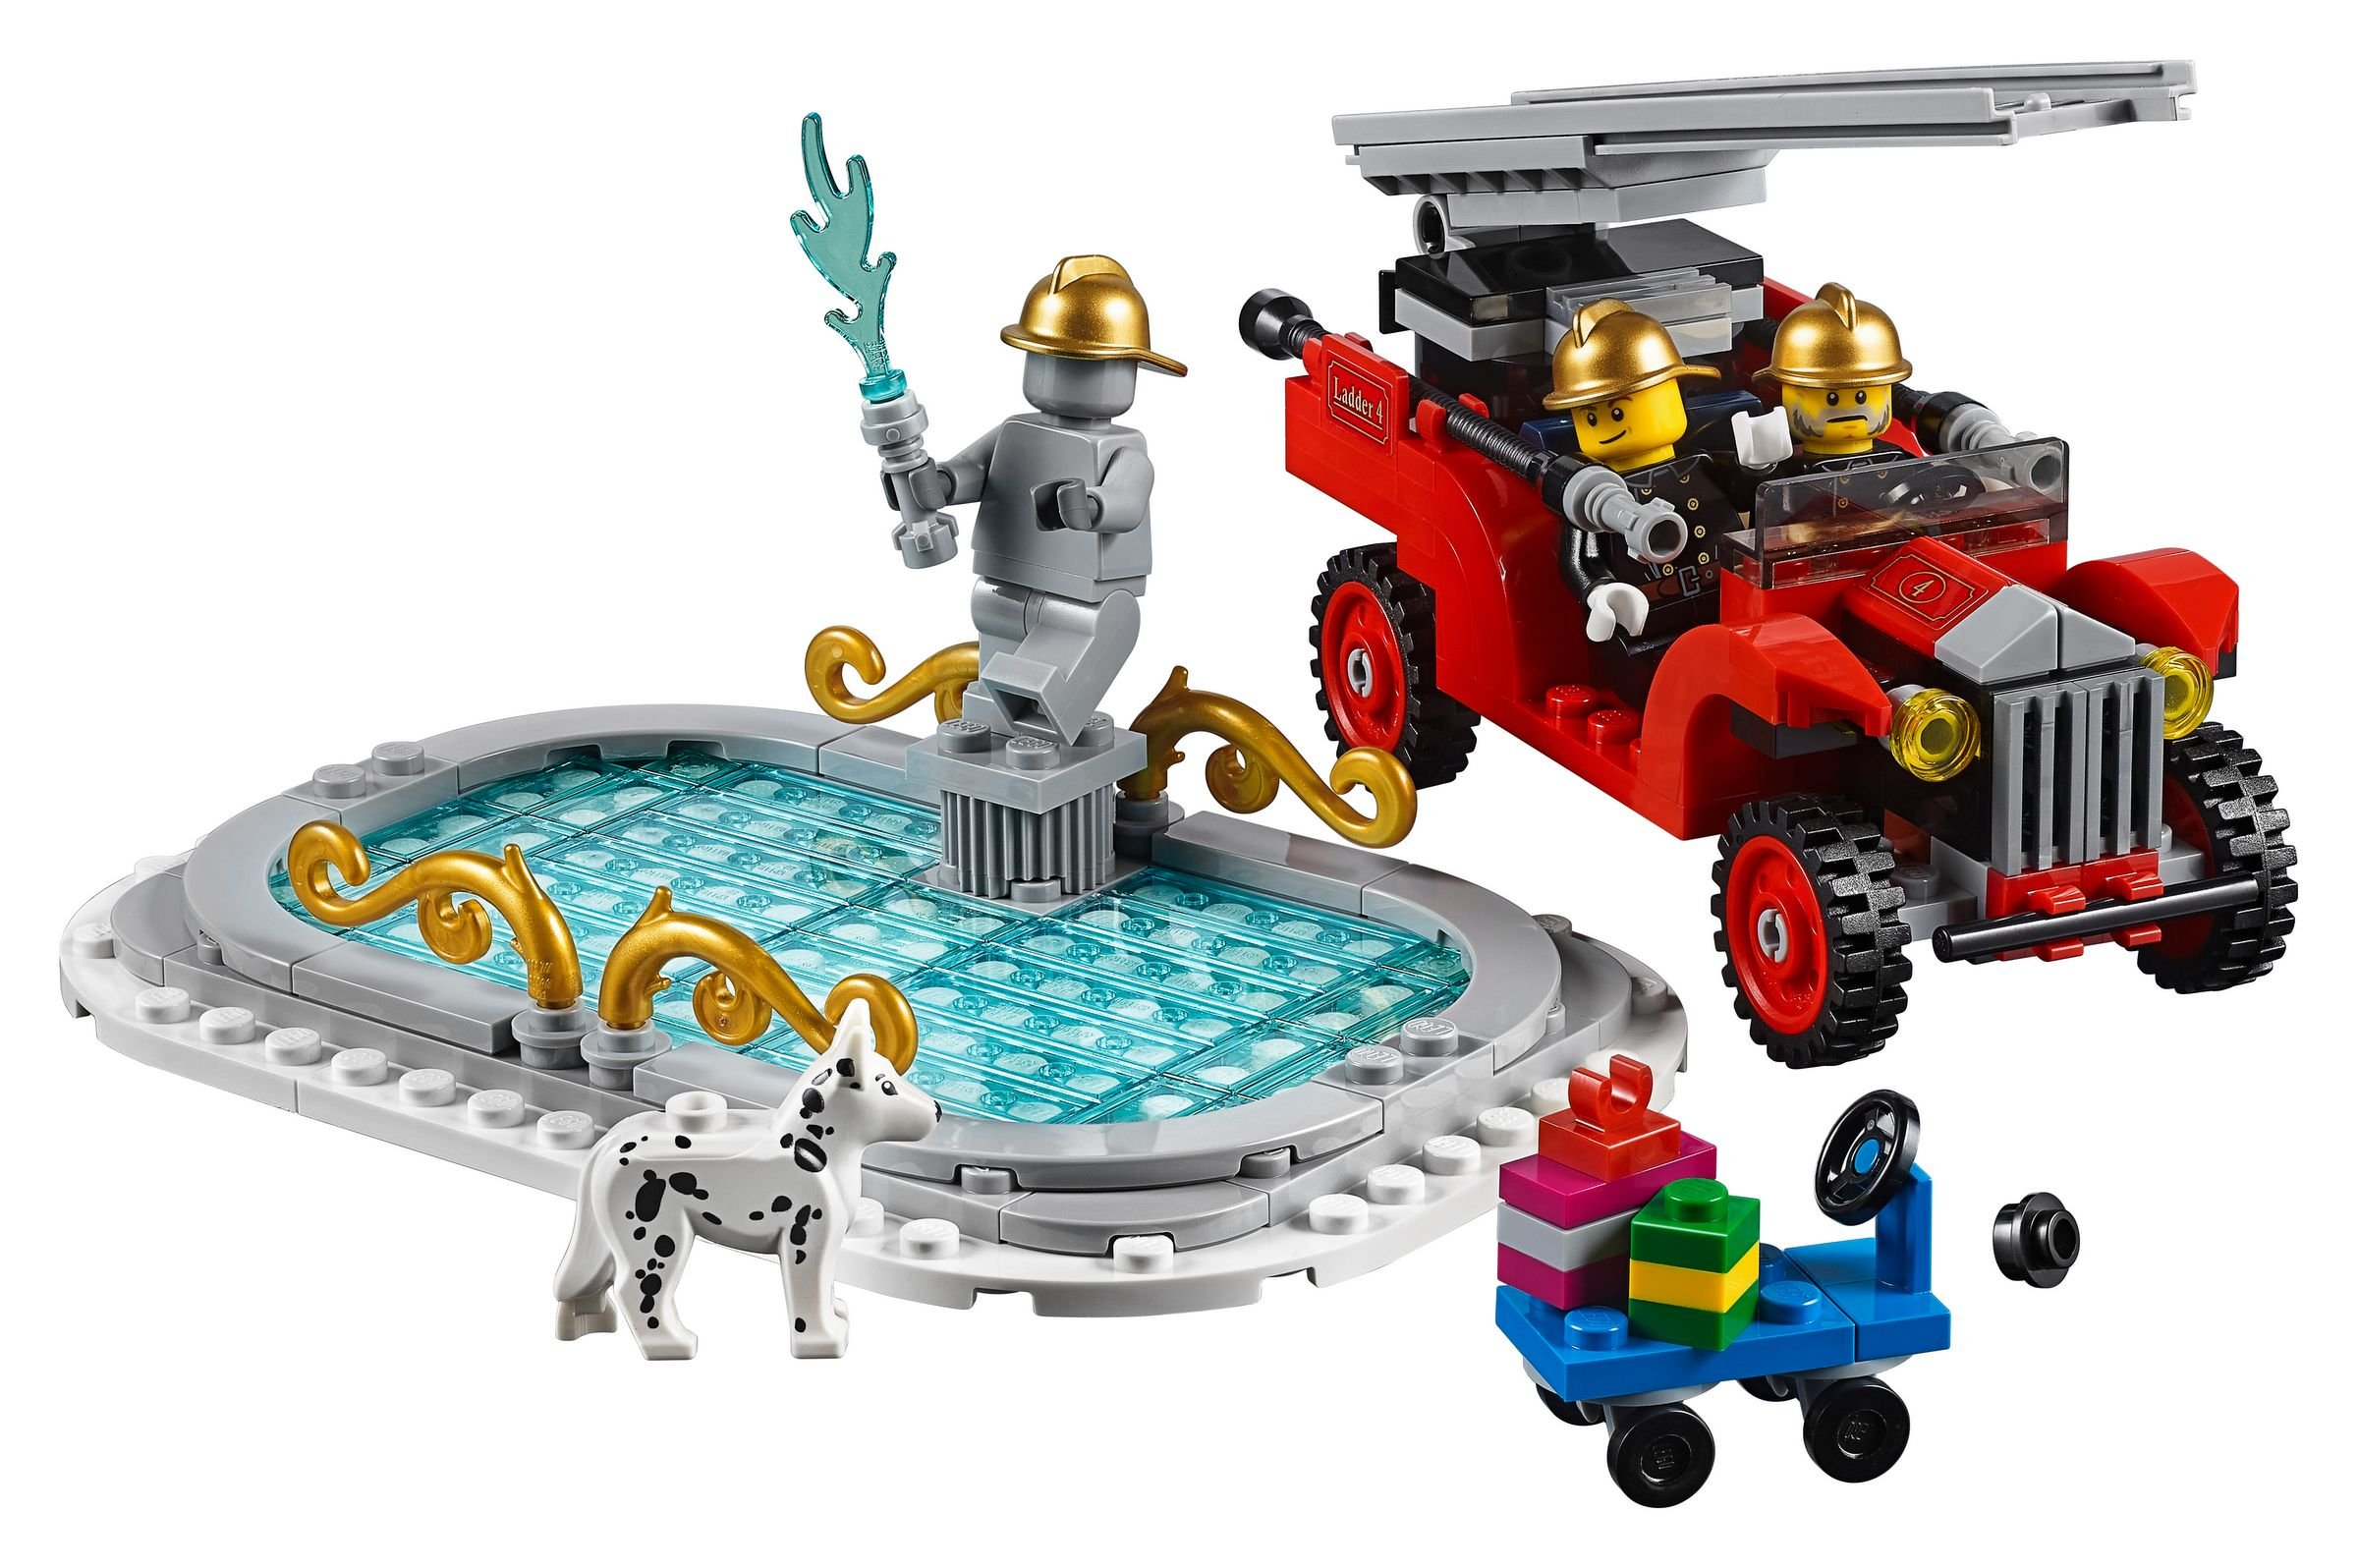 LEGO Creator Expert 10263 Winterliche Feuerwehrstation Bausatz